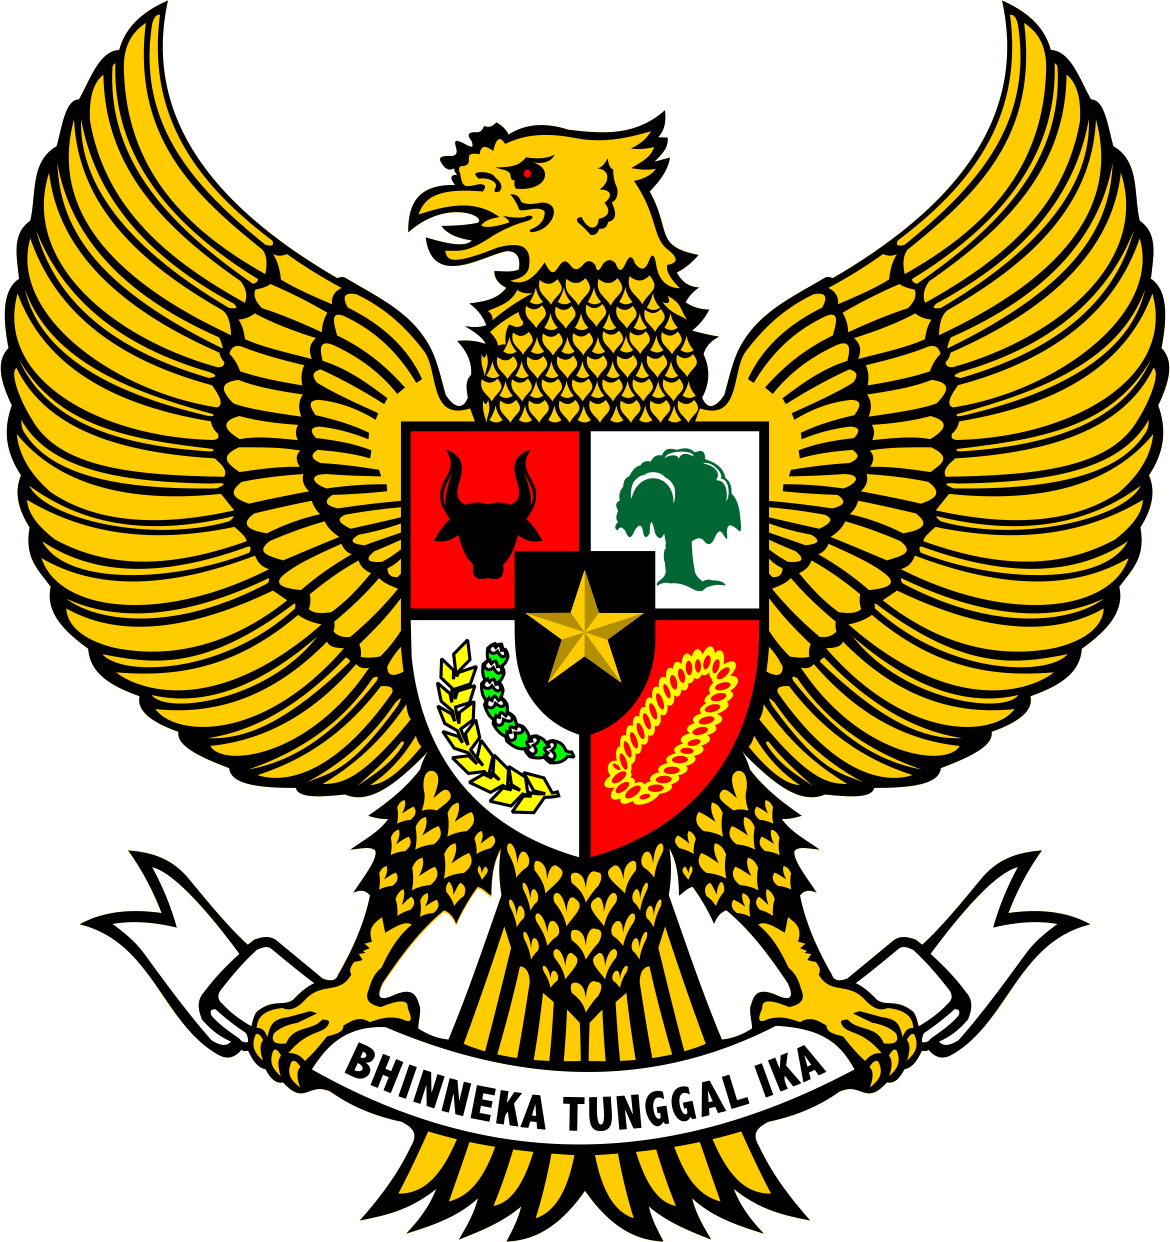 Garuda Pancasila Logo Vector (AI, Png Files) - Welogo 